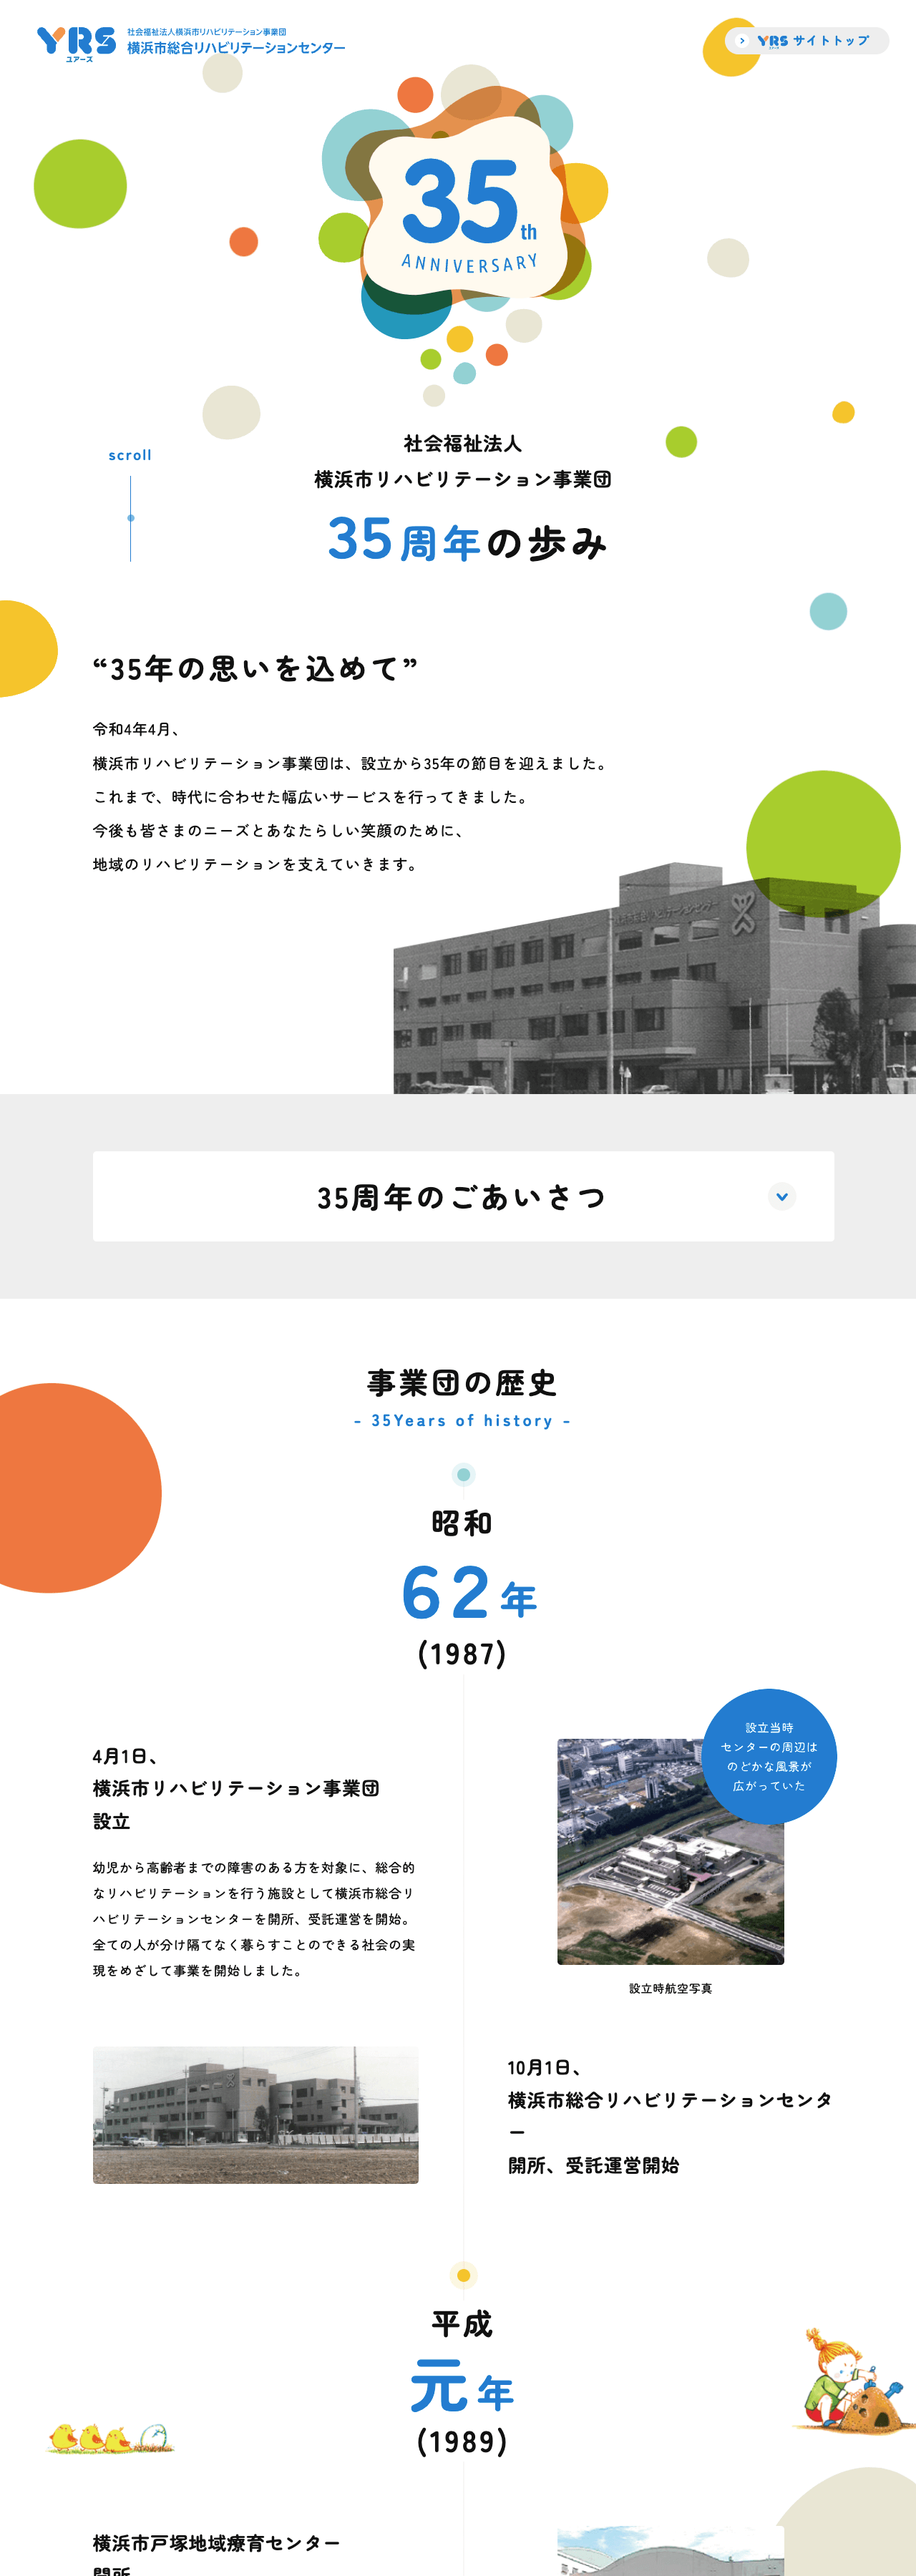 社会福祉法人 横浜市リハビリテーション事業団 35周年記念サイト